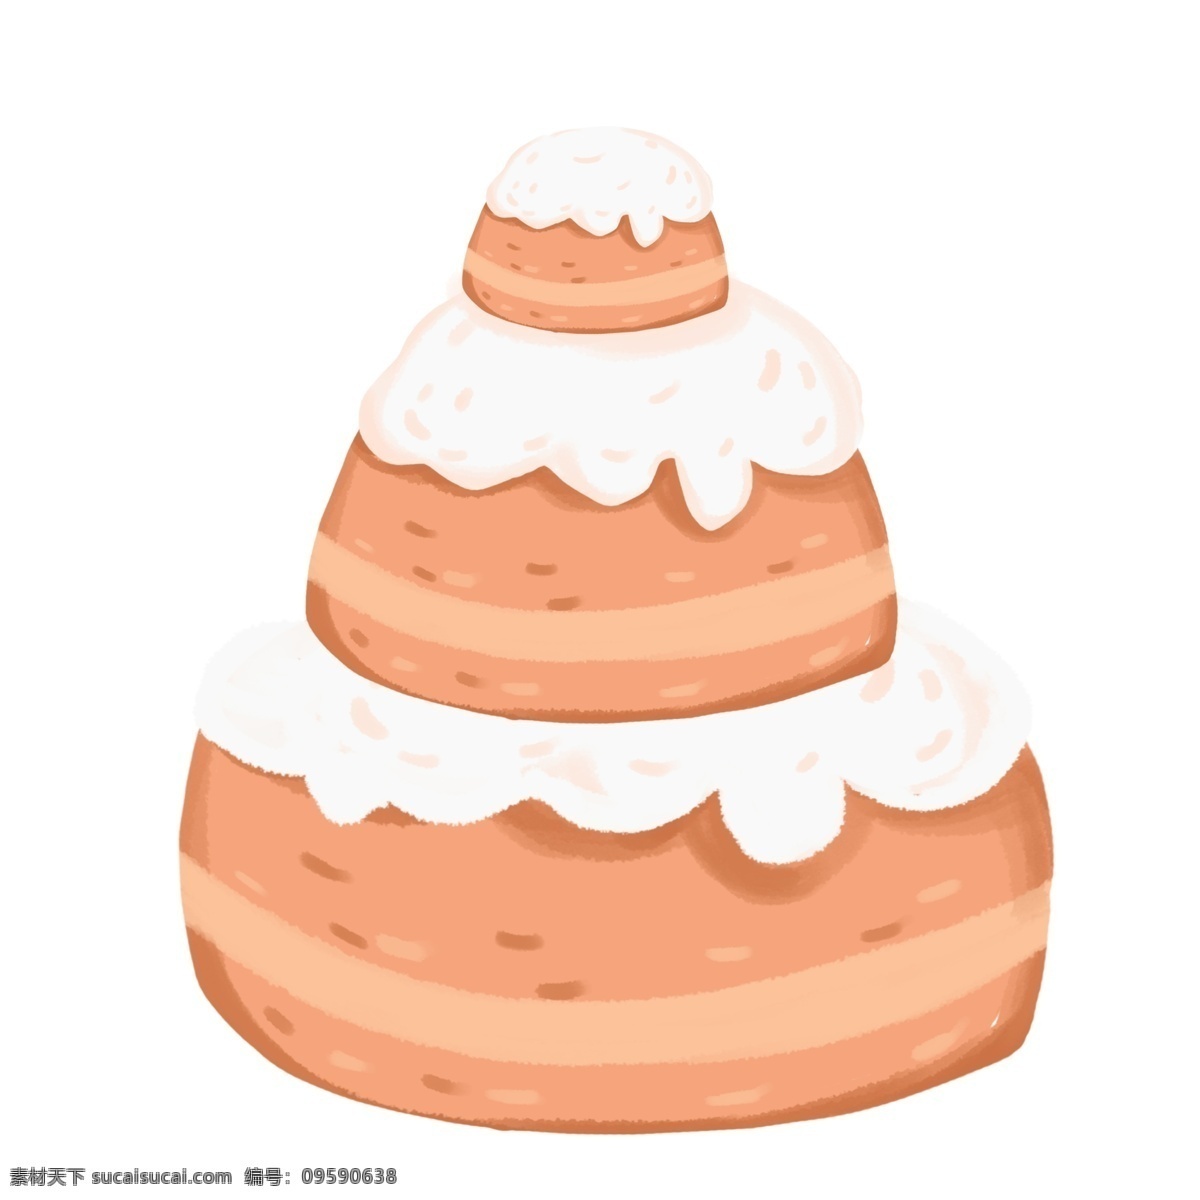 矢量 生日蛋糕 手绘 甜品 蛋糕 生日 生日贺卡 节日蛋糕 蛋糕设计 奶油蛋糕 草莓蛋糕 甜点 手绘蛋糕